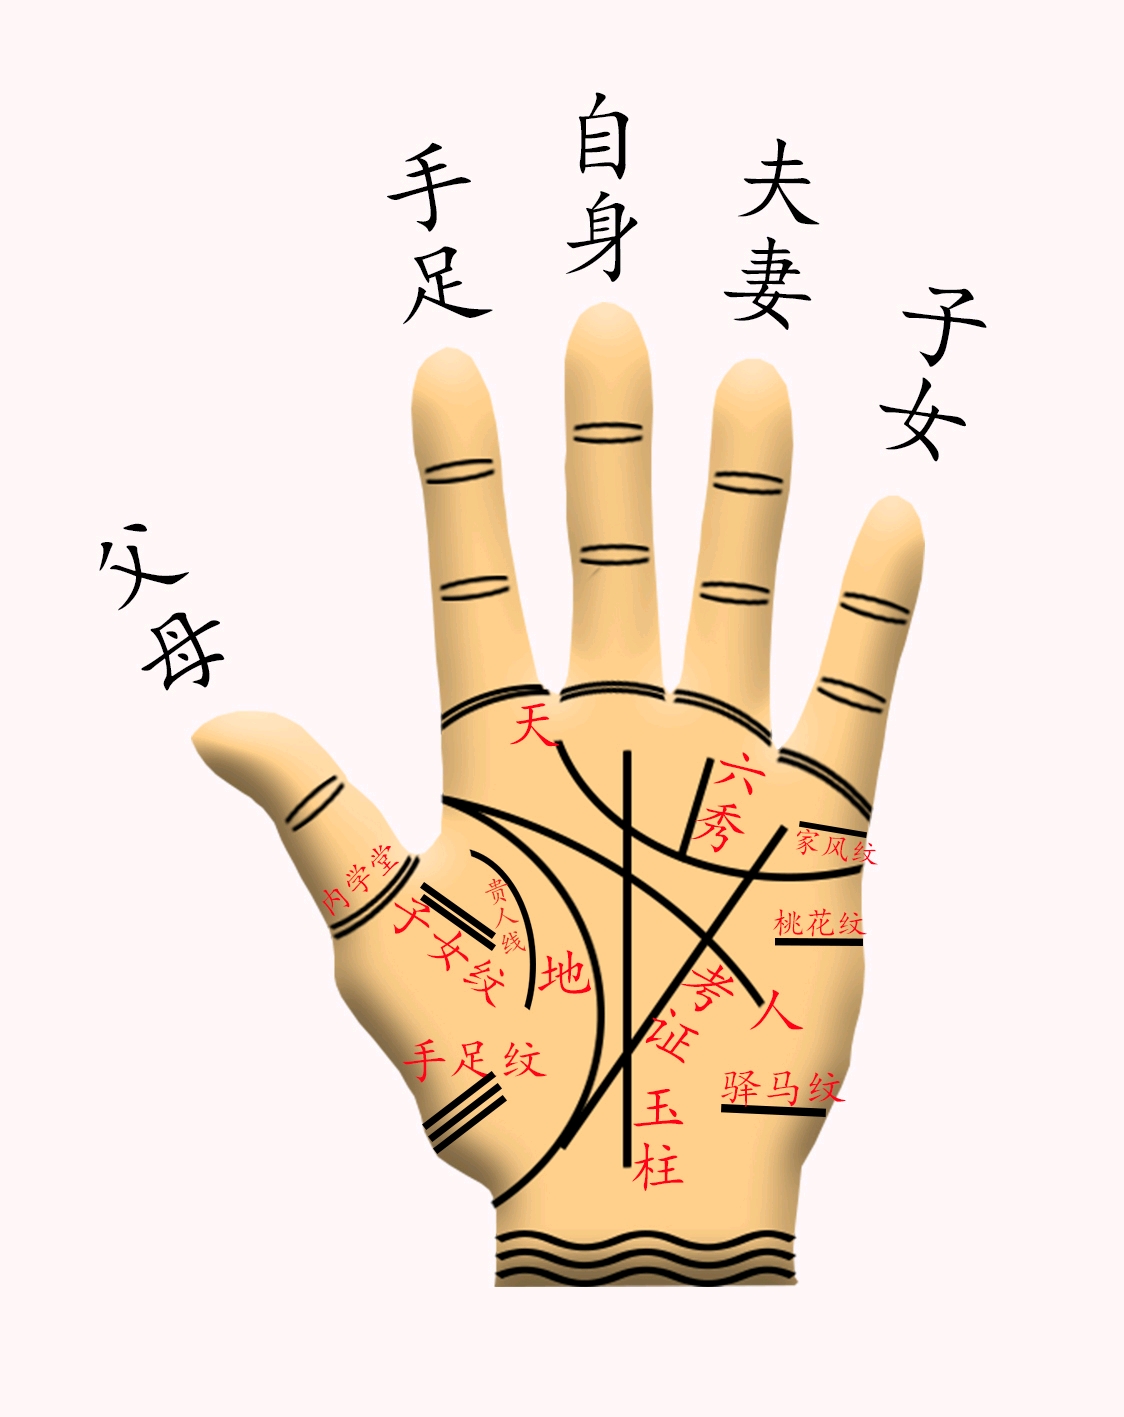 在上一条的基础上,按照五行八卦的体系即中国手相看的话,男左女右